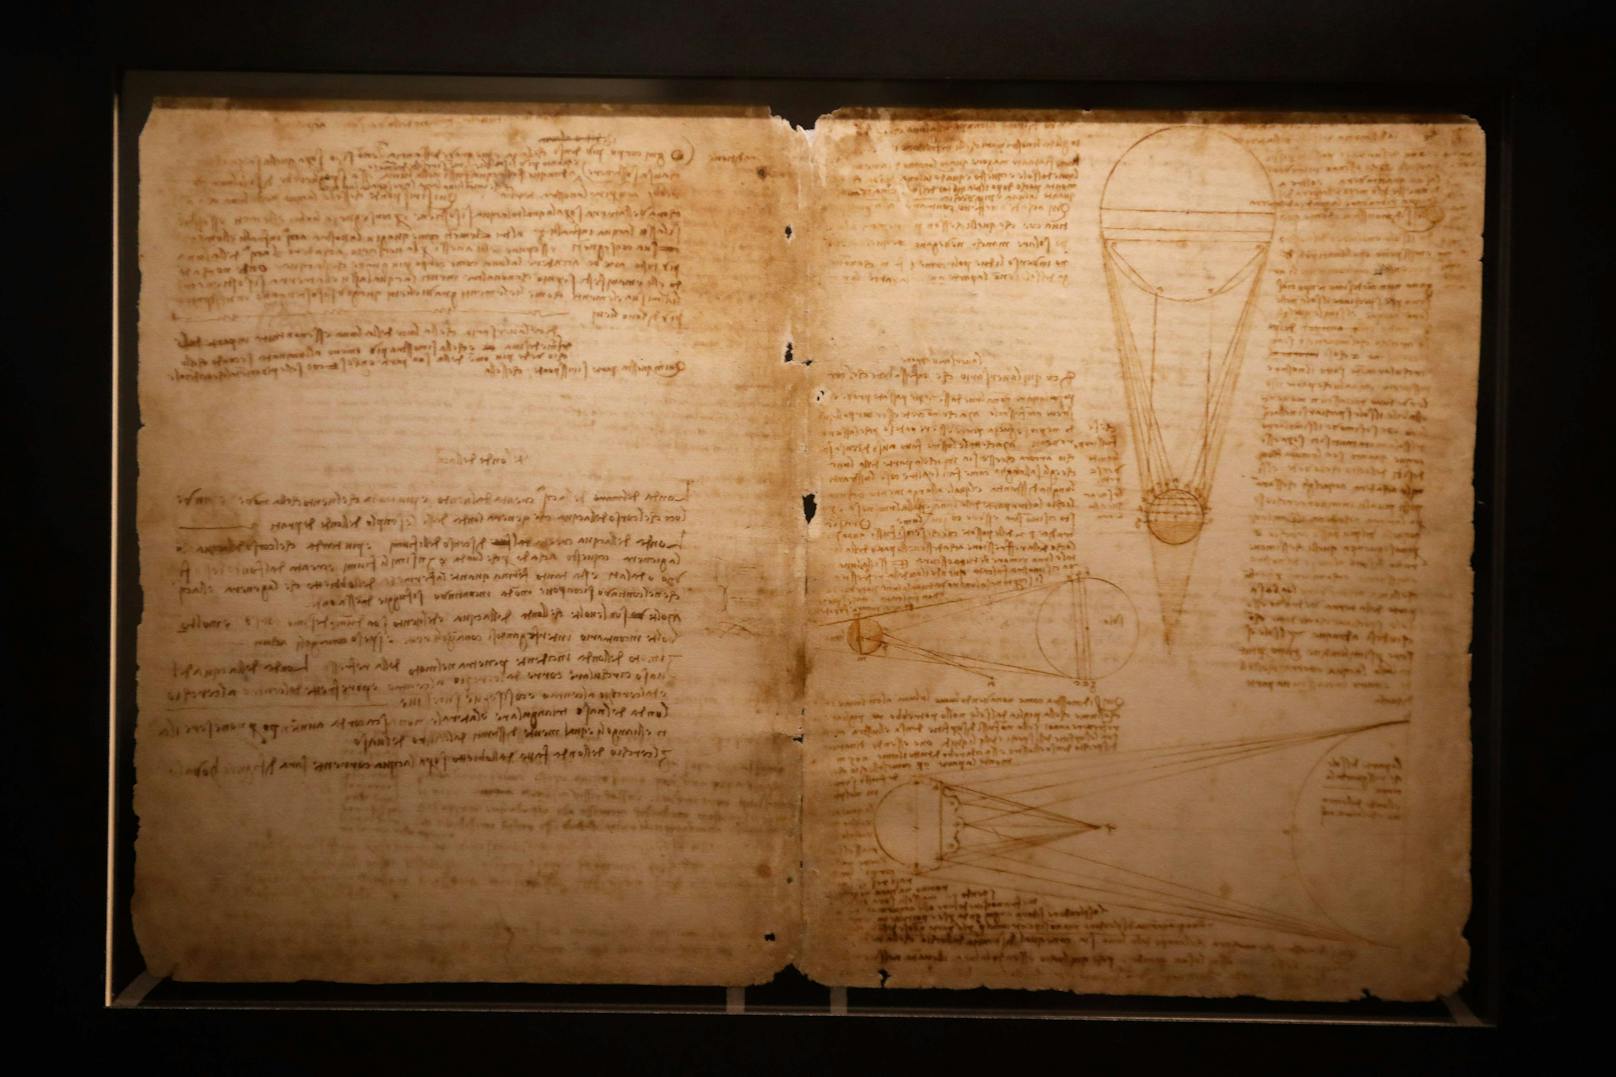 Der <strong>Codex Leicester</strong> ist eine gebundene Sammlung von Blättern mit wissenschaftlichen Schriften, Notizen, Skizzen und Zeichnungen Leonardo da Vincis.